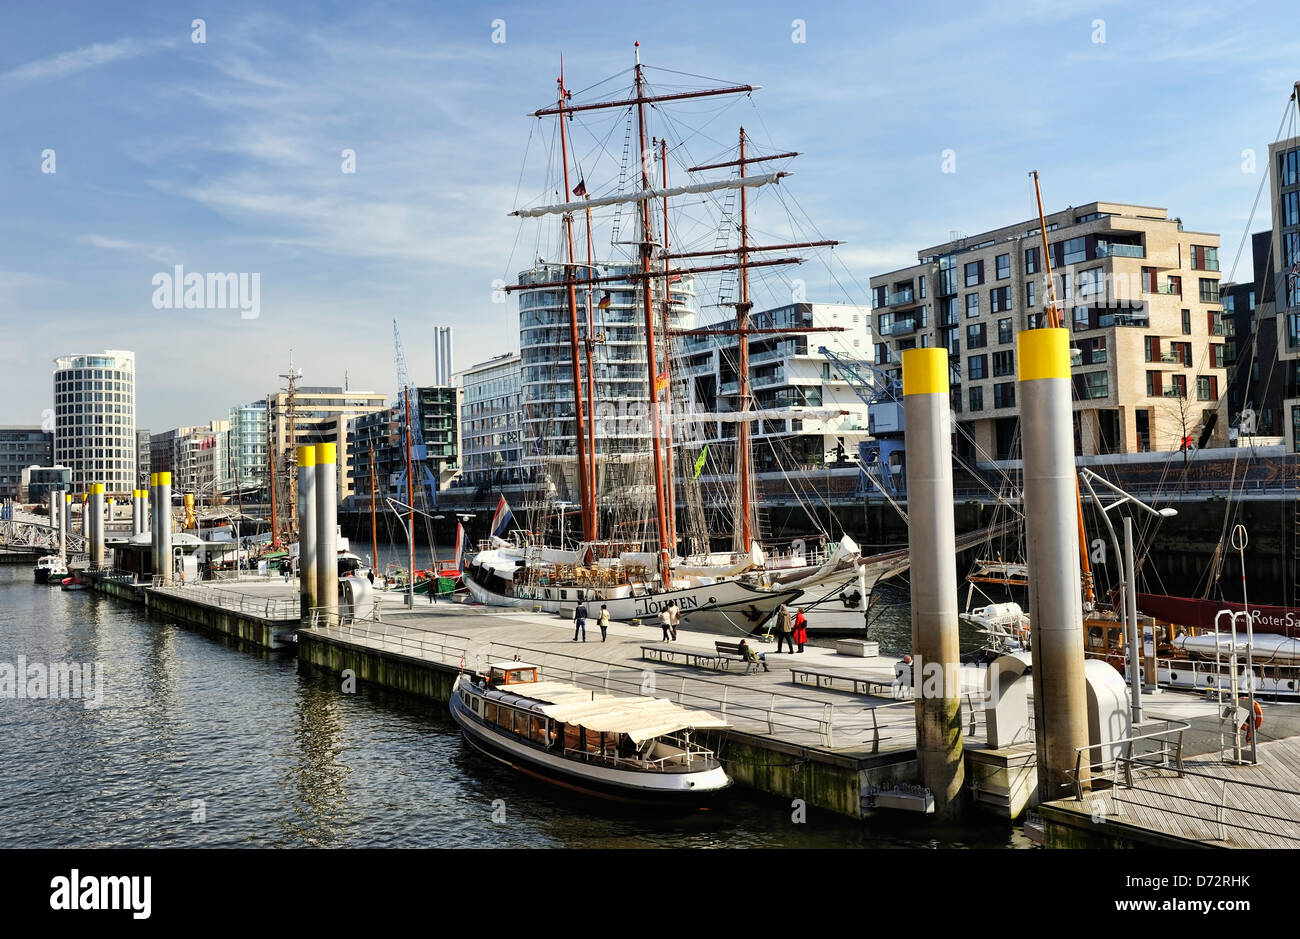 La porte de sable dans le port de la ville portuaire de Hambourg, Allemagne, Europe Banque D'Images